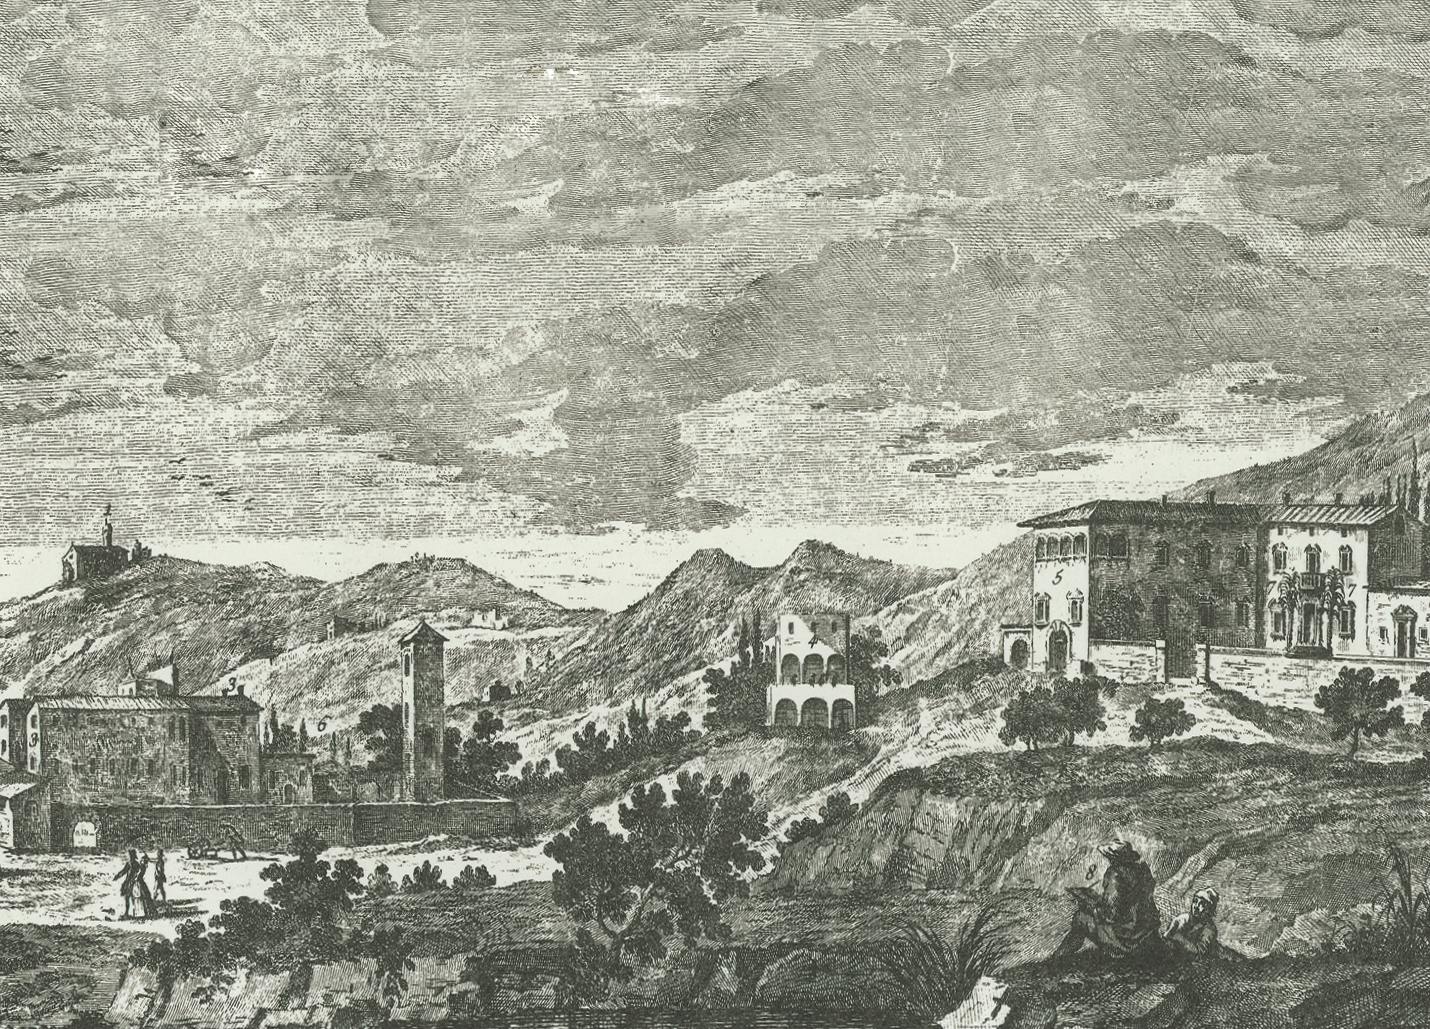 Veduta del paesaggio di Doccia nel '700: a destra una casa e una chiesa, a sinistra una grande villa sulle pendici della collina